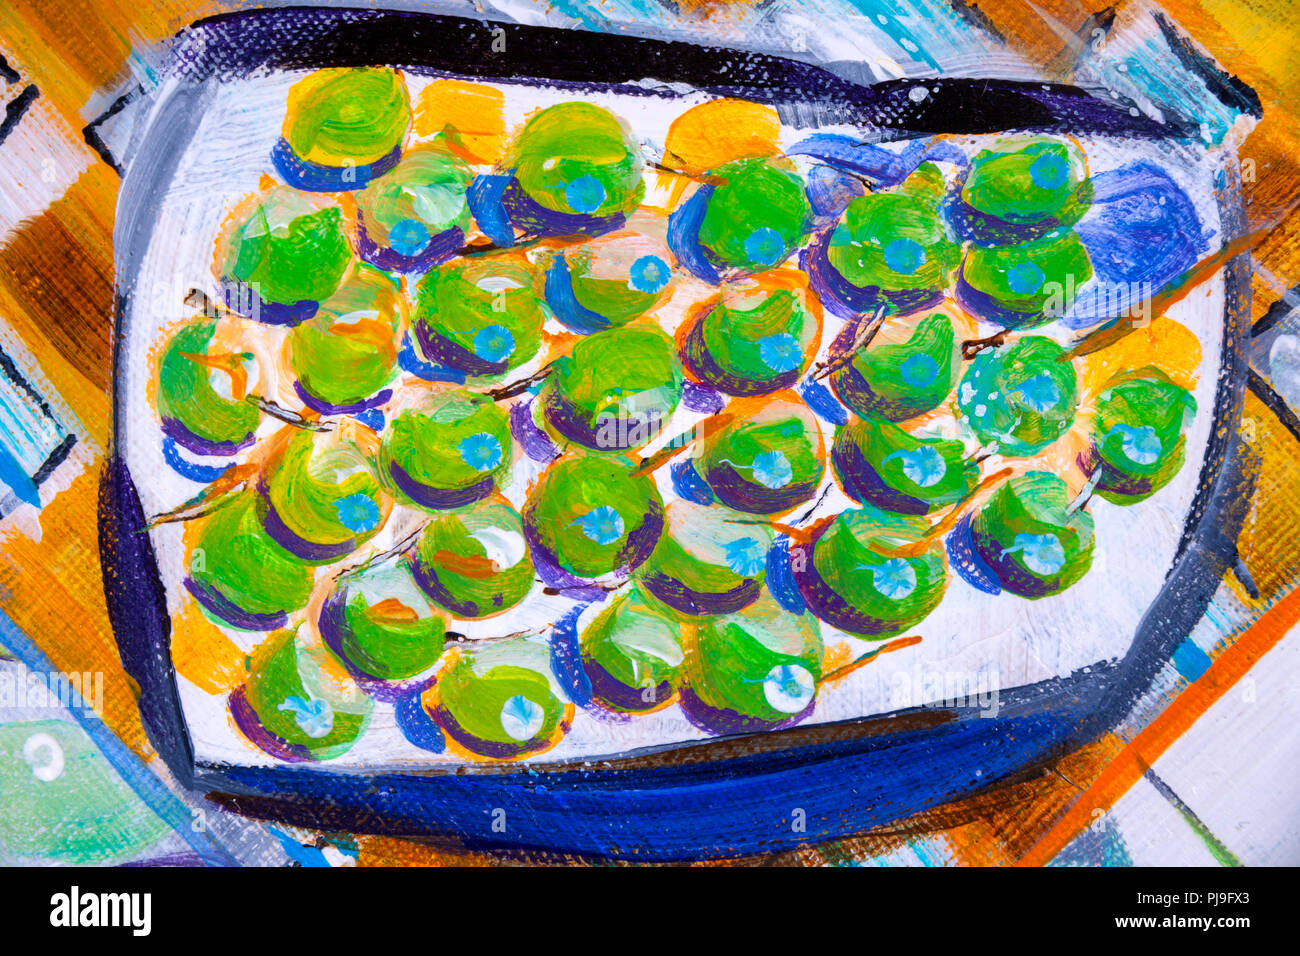 Details zu Acryl Gemälde zeigen, Farbe, Texturen und Techniken. Abstrakte expressionistische Trauben auf einem Teller. Stockfoto